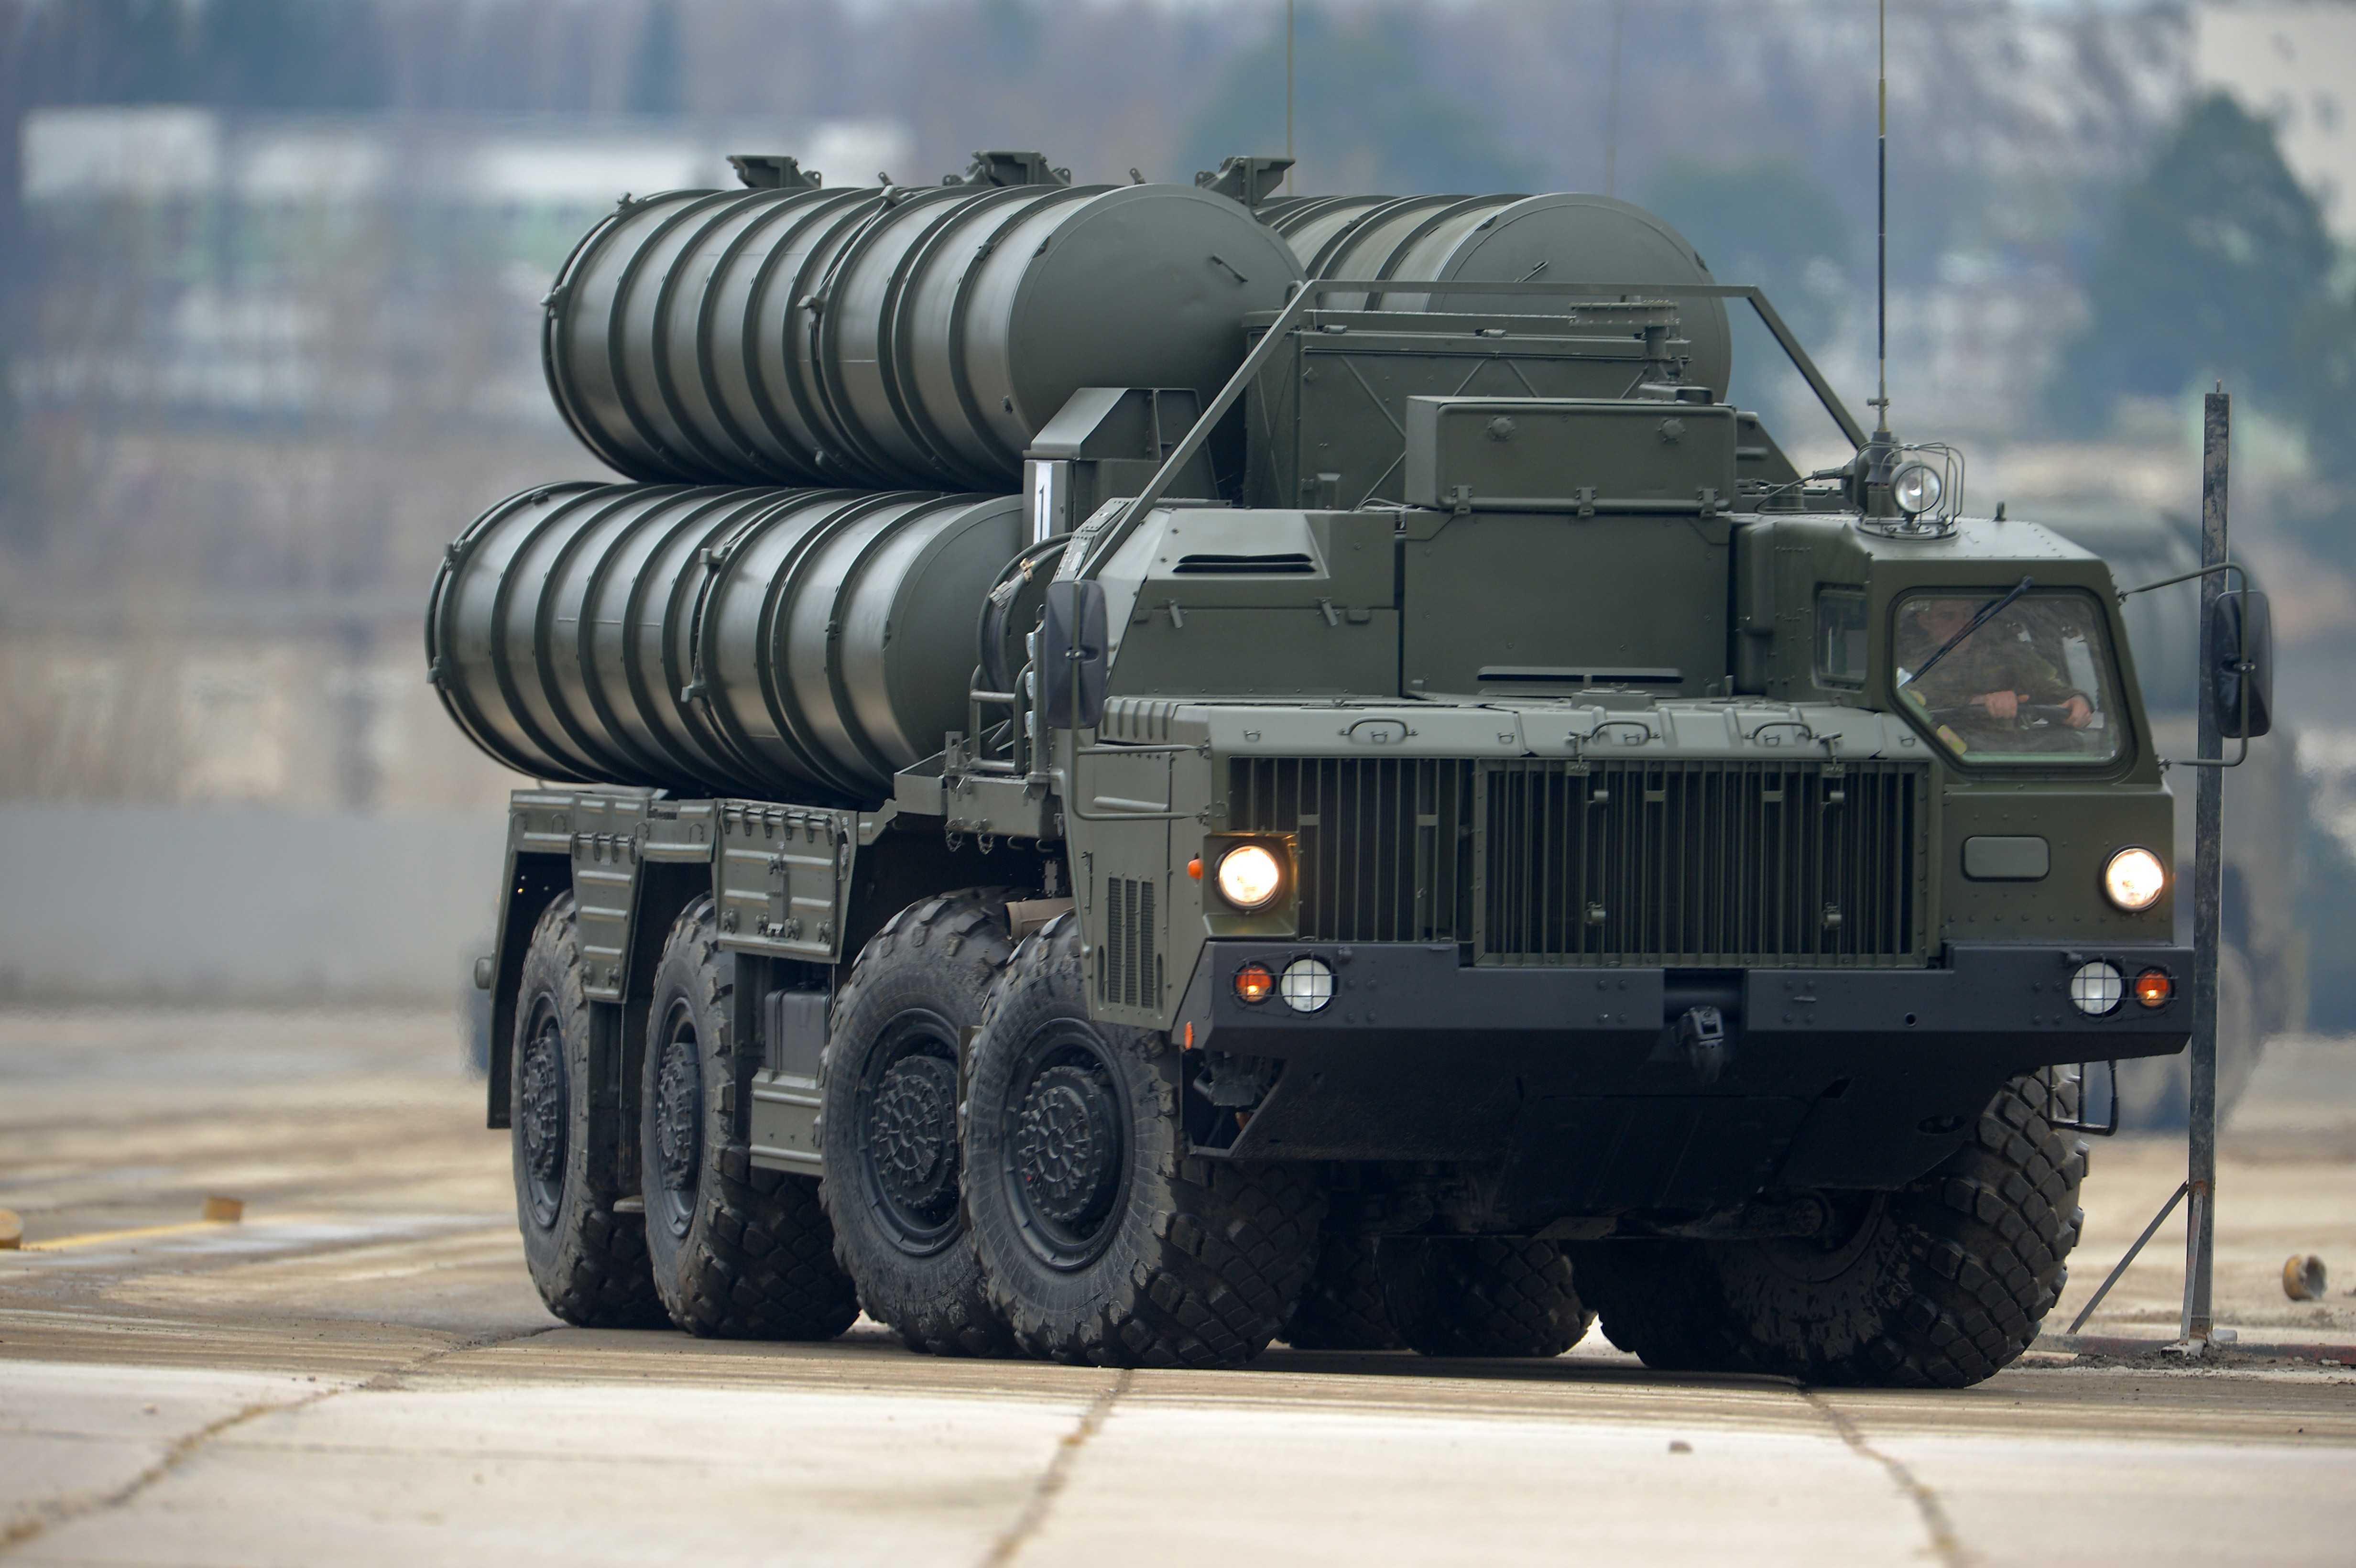 Թուրքիան ռուսական Ս-400 զենիթահրթիռային համալիրների հարցում ԱՄՆ-ին «զիջման» է գնացել